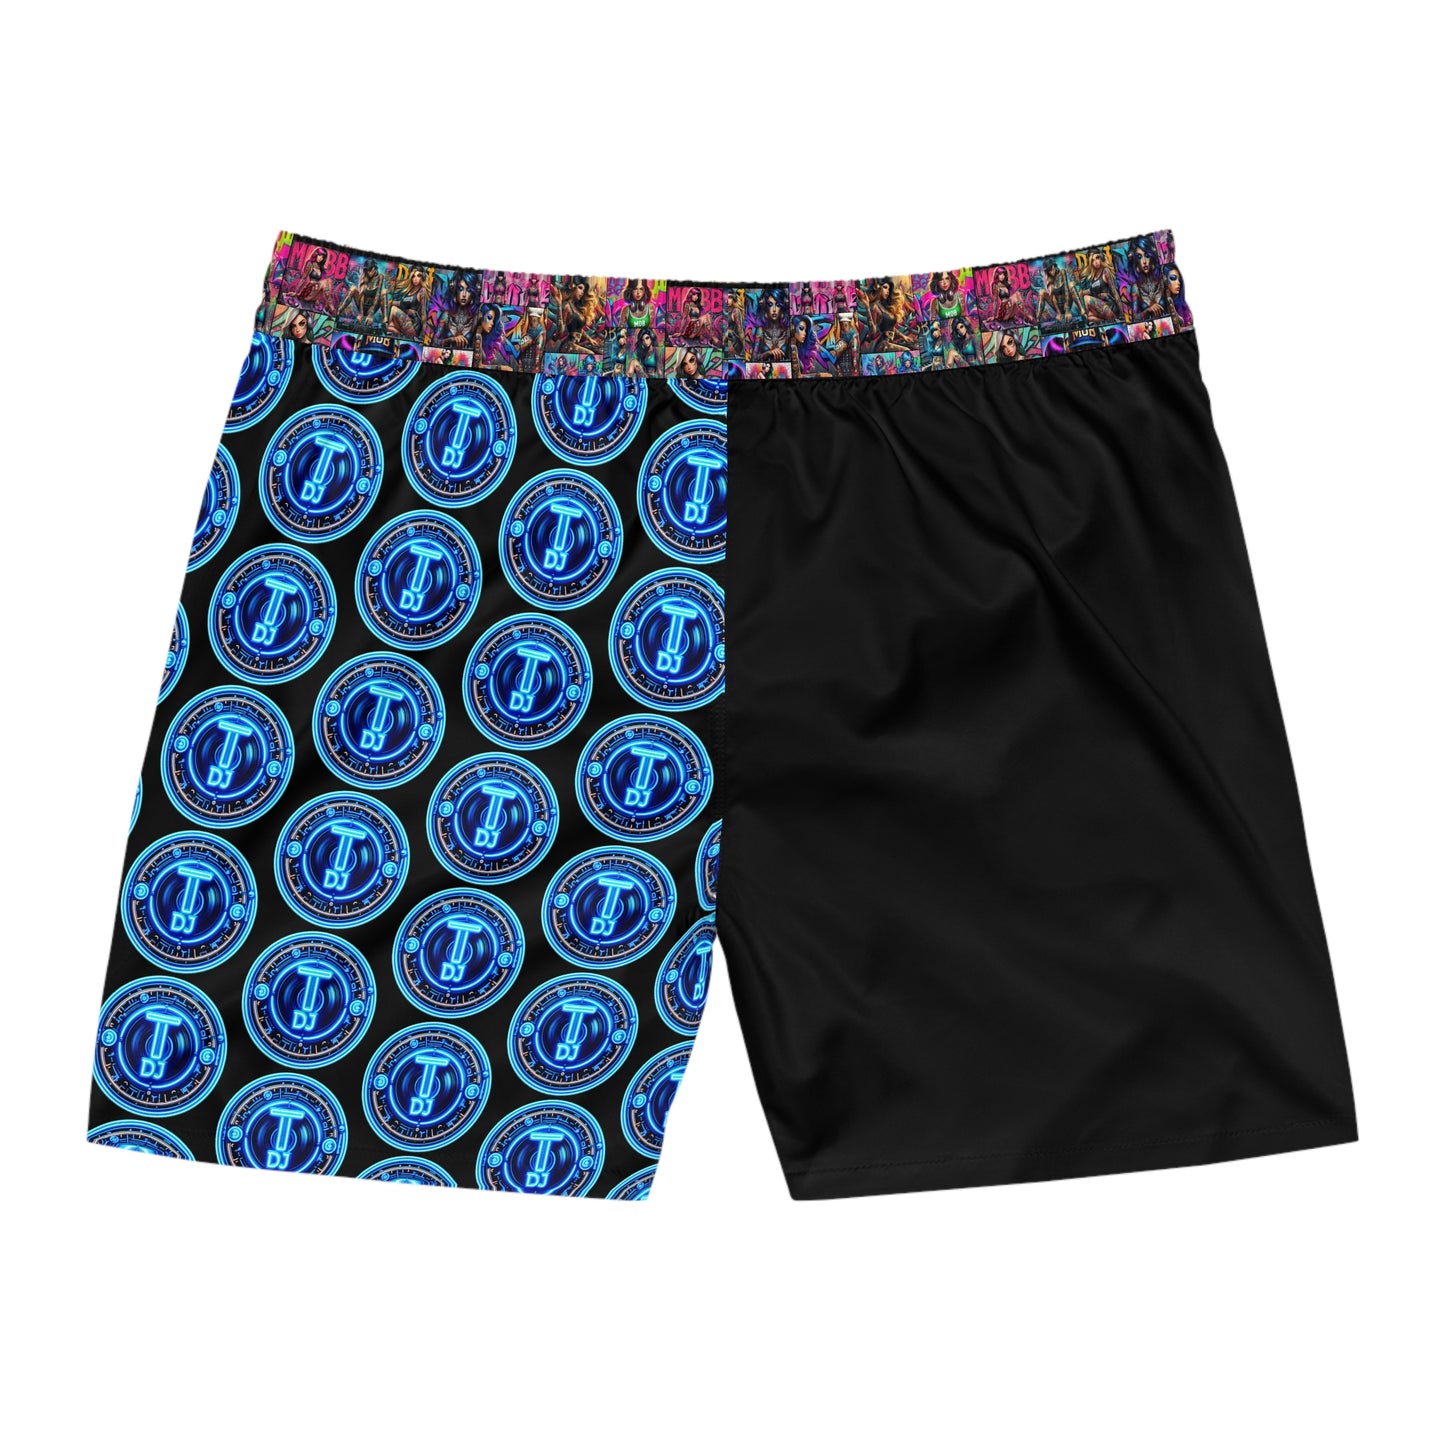 MDBTDJ#MLS1 Men's Mid-Length Swim Shorts Tattooed Dj's Limited Edition Swim Wear